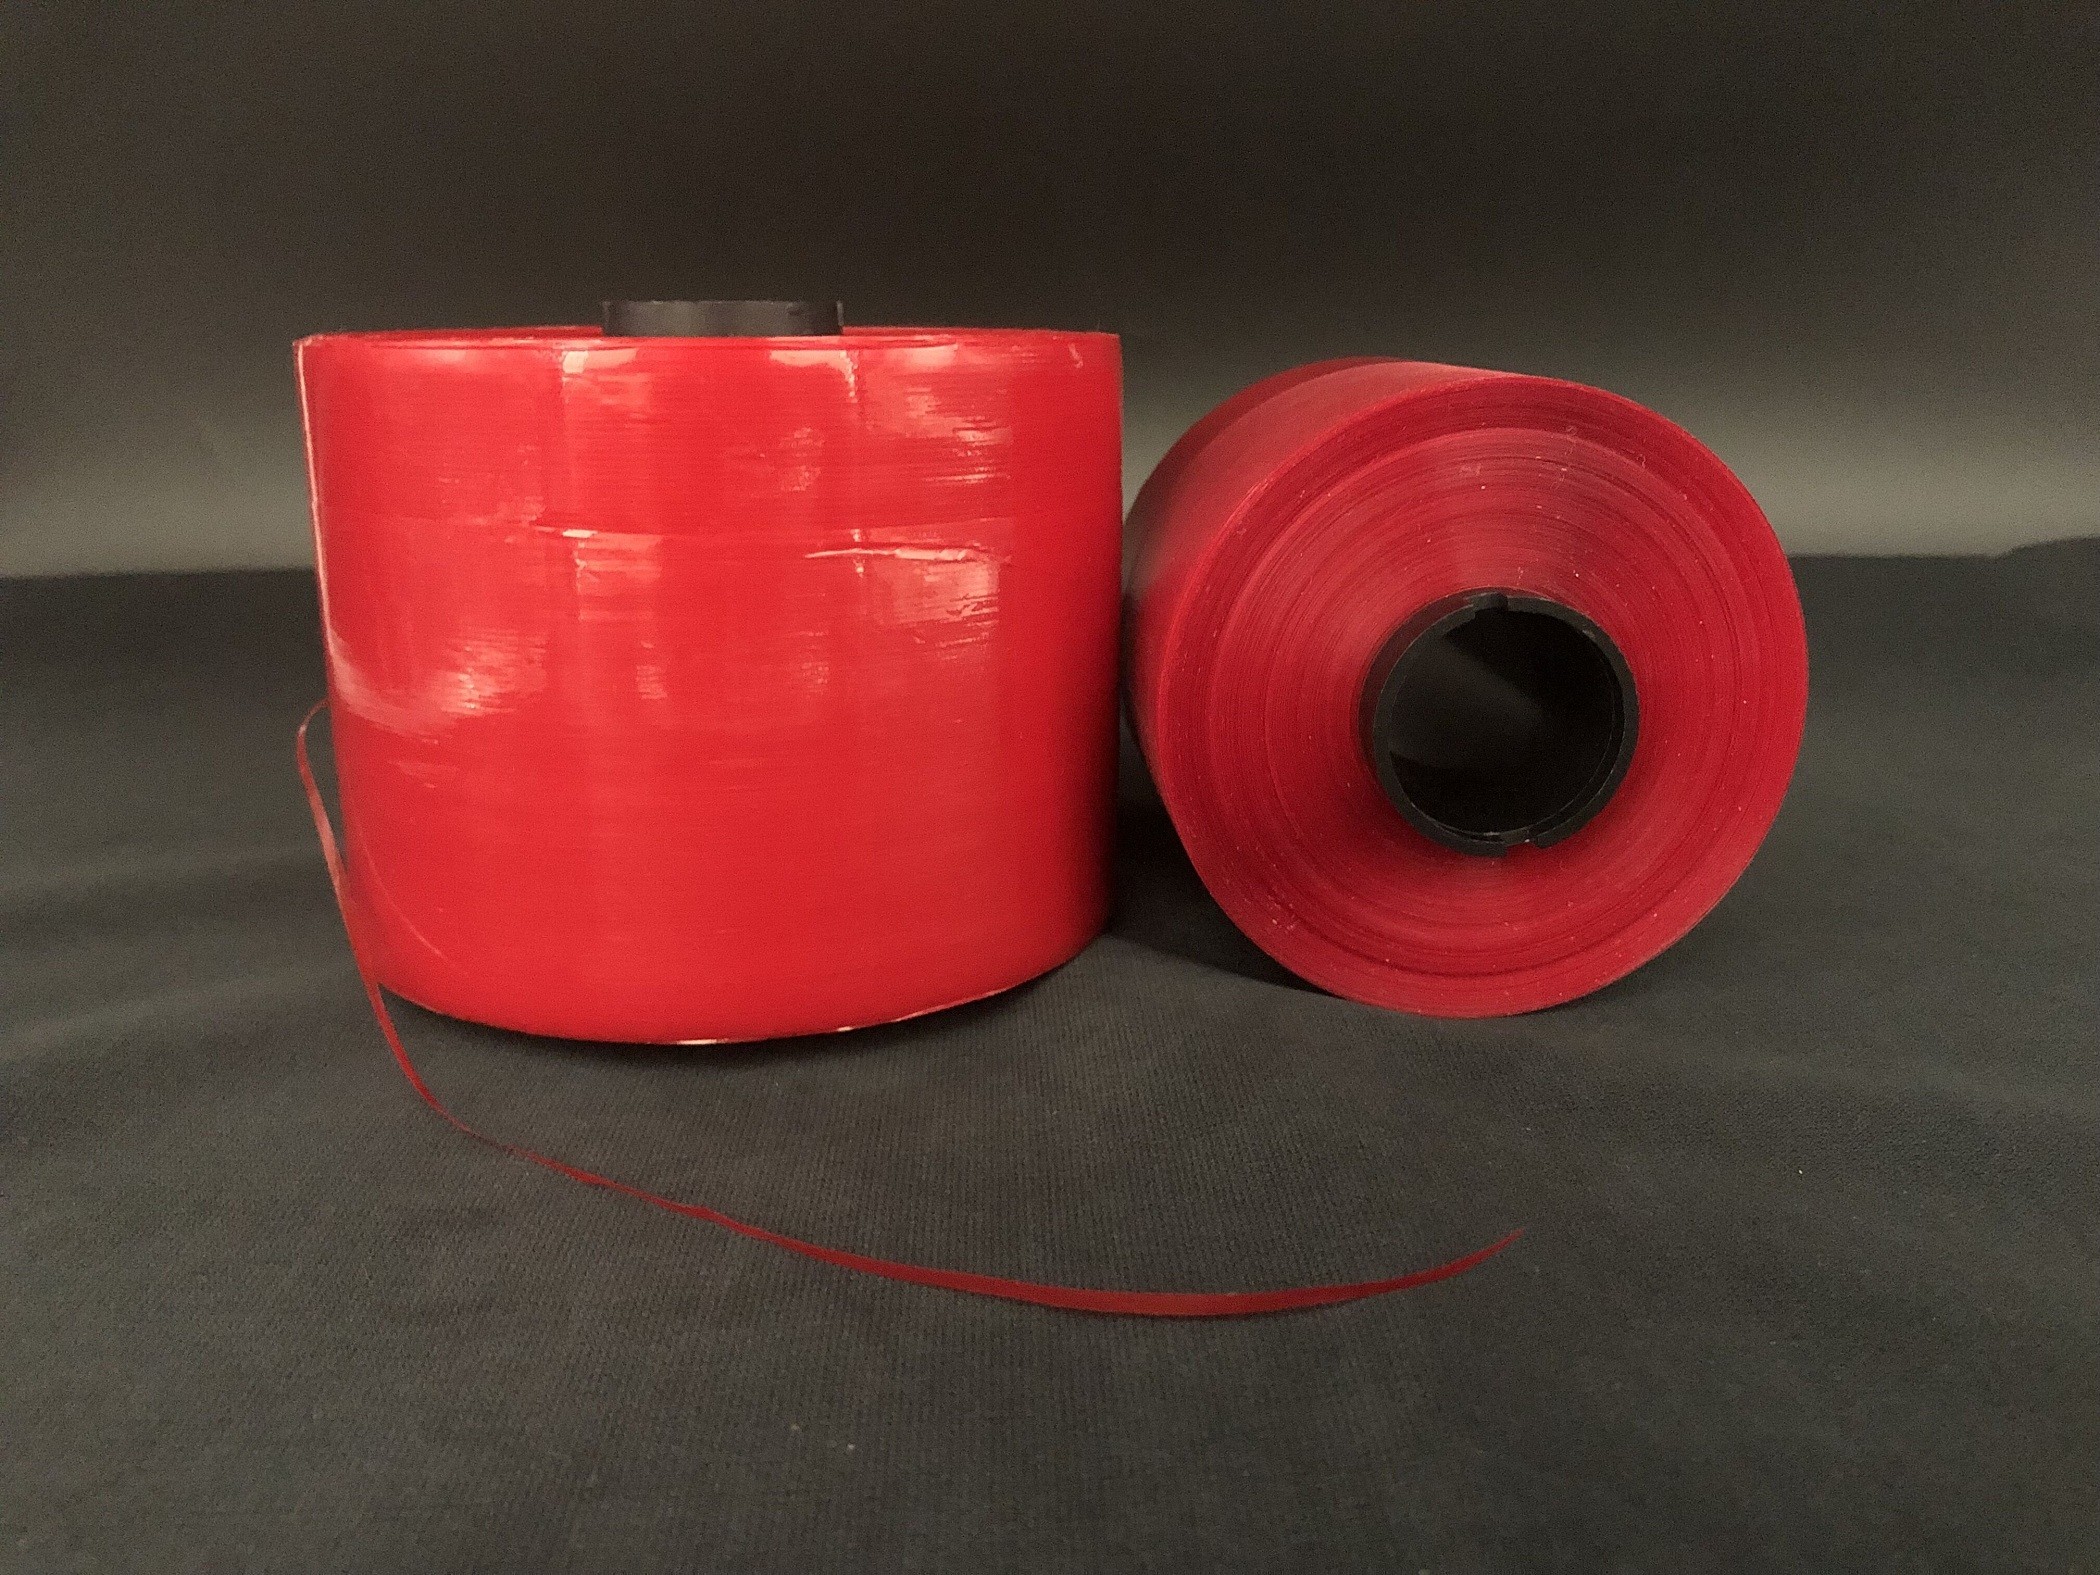 Băng keo Jumbo 5 mm Băng dính màu đỏ bảo mật tùy chỉnh cho bao bì giấy Dhl và mở